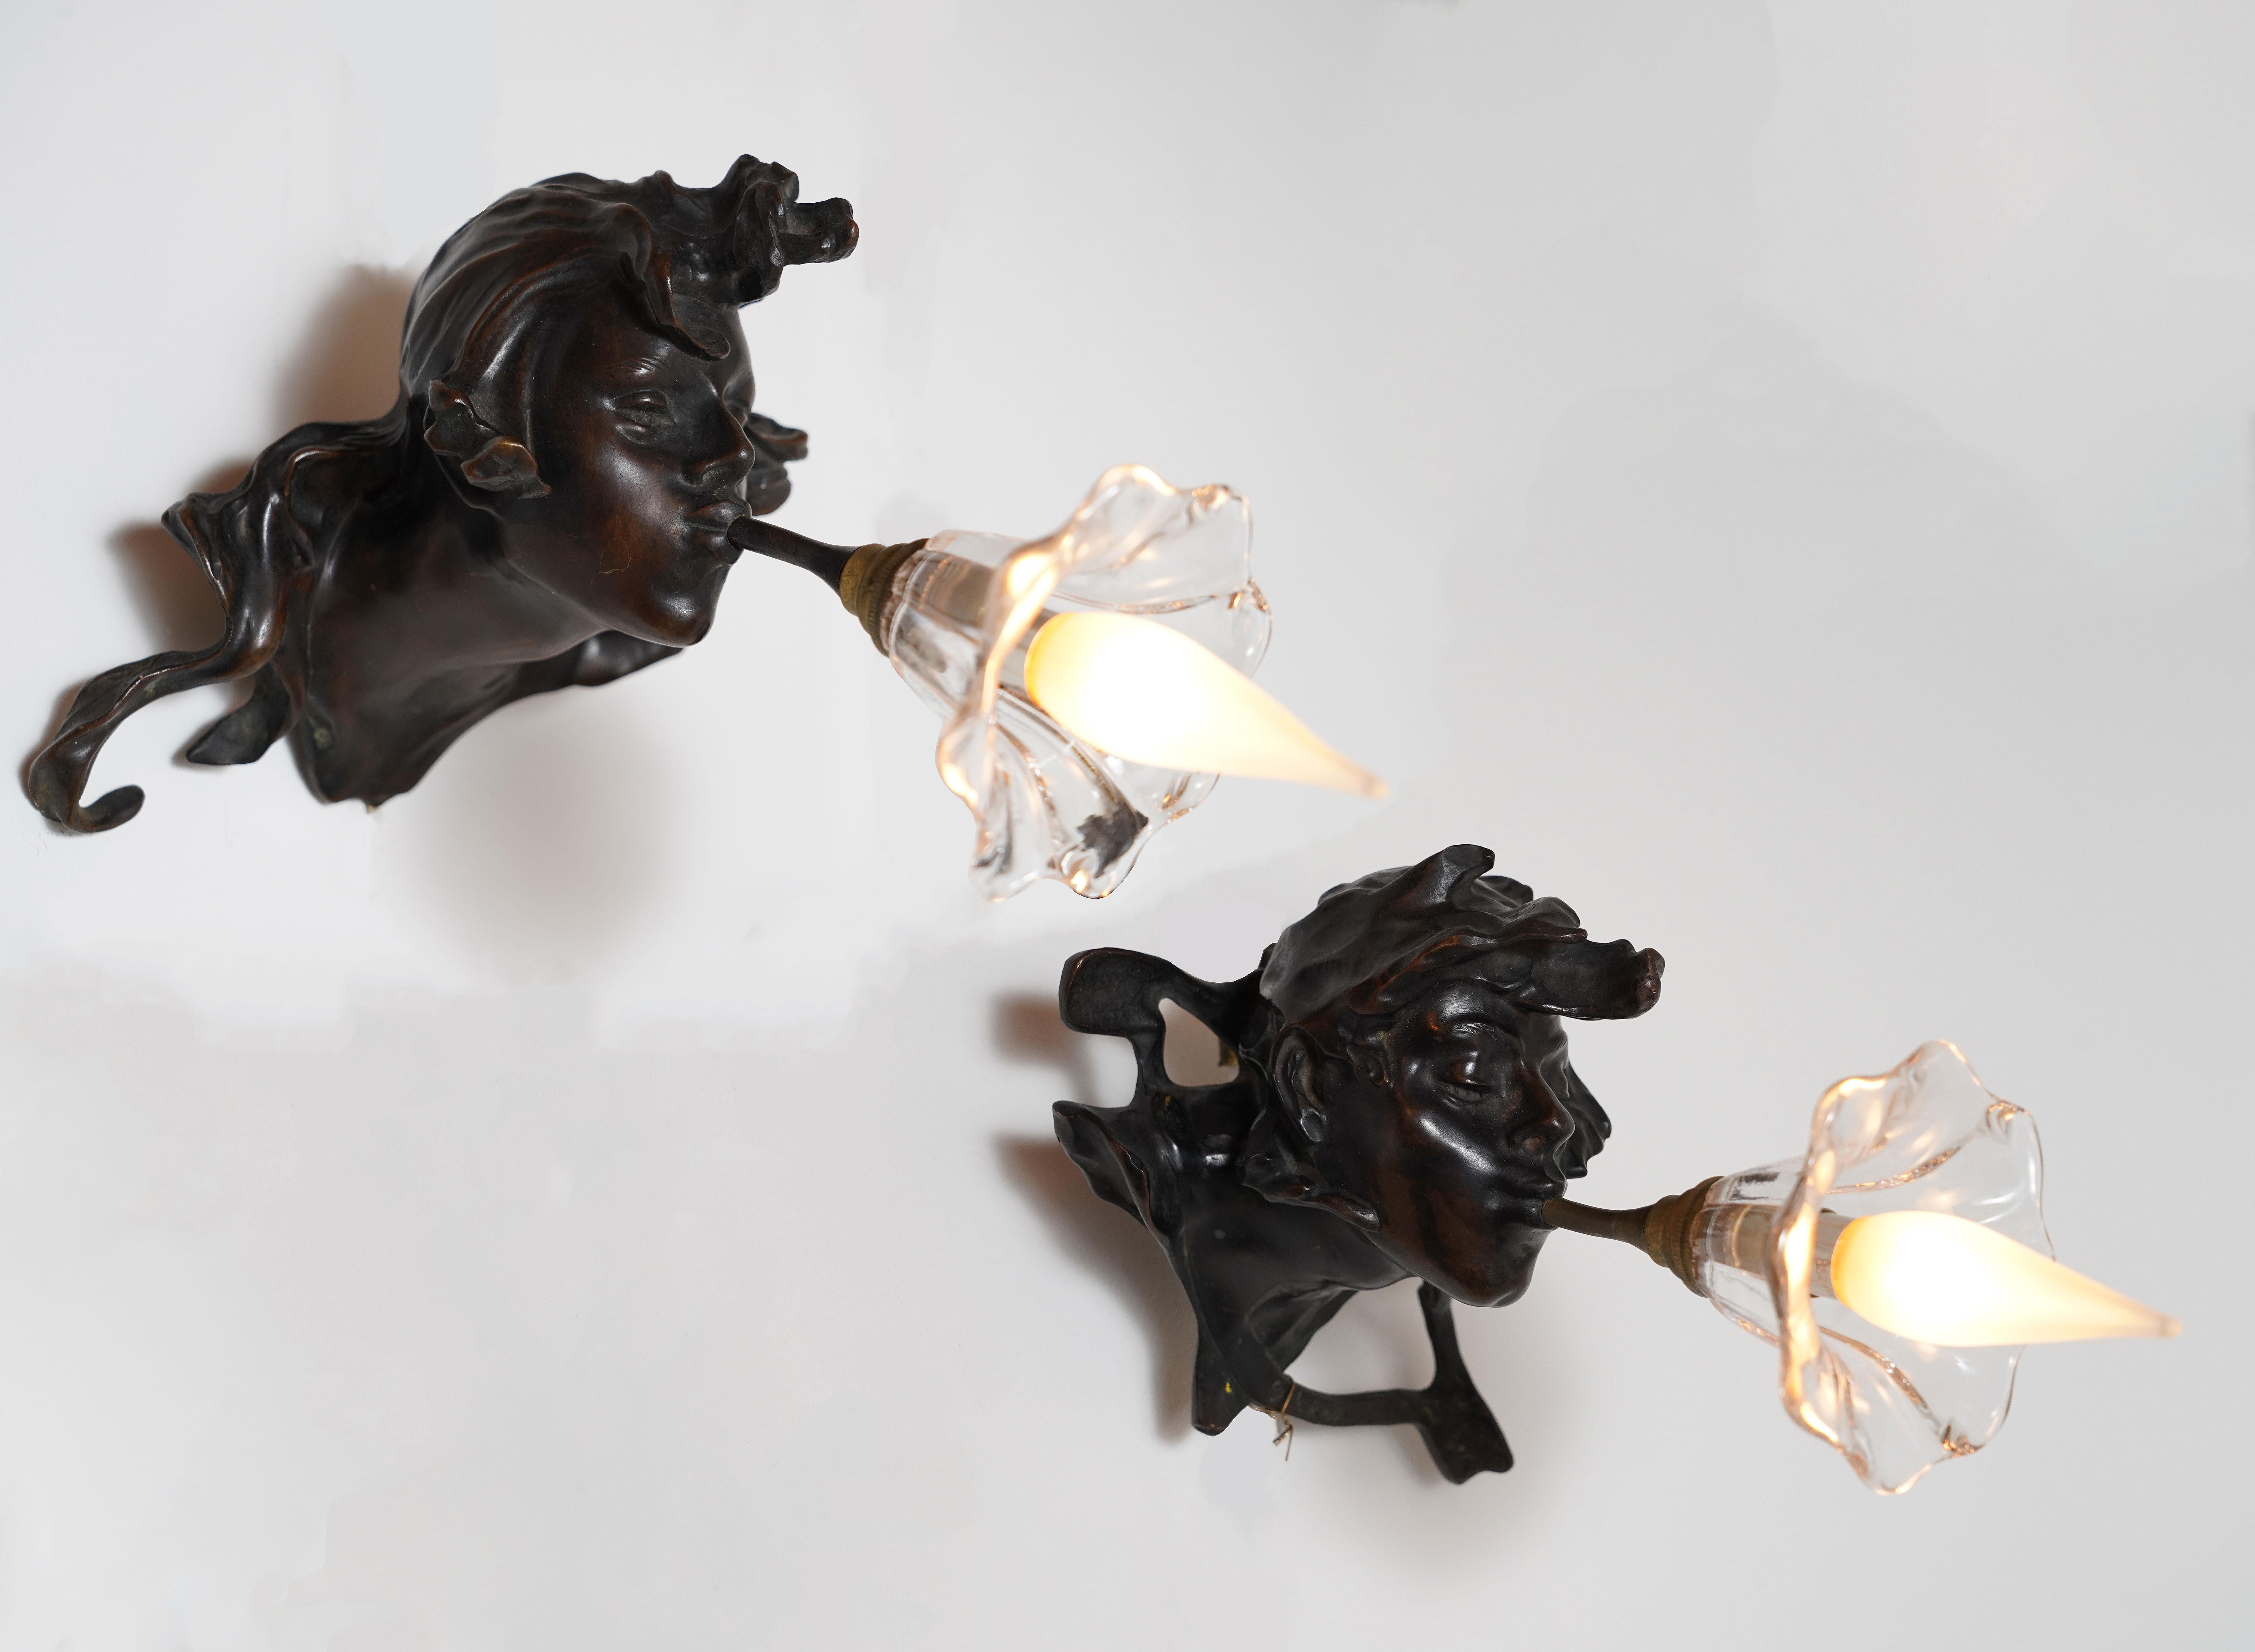 Charmantes Paar patinierter Bronzewandleuchter, die zwei männliche Köpfe darstellen, die in eine leuchtende Glaskrone blasen, die aus ihren Mündern entspringt.

Dieses Modell einer Wandleuchte ist das berühmteste Werk des französischen Bildhauers